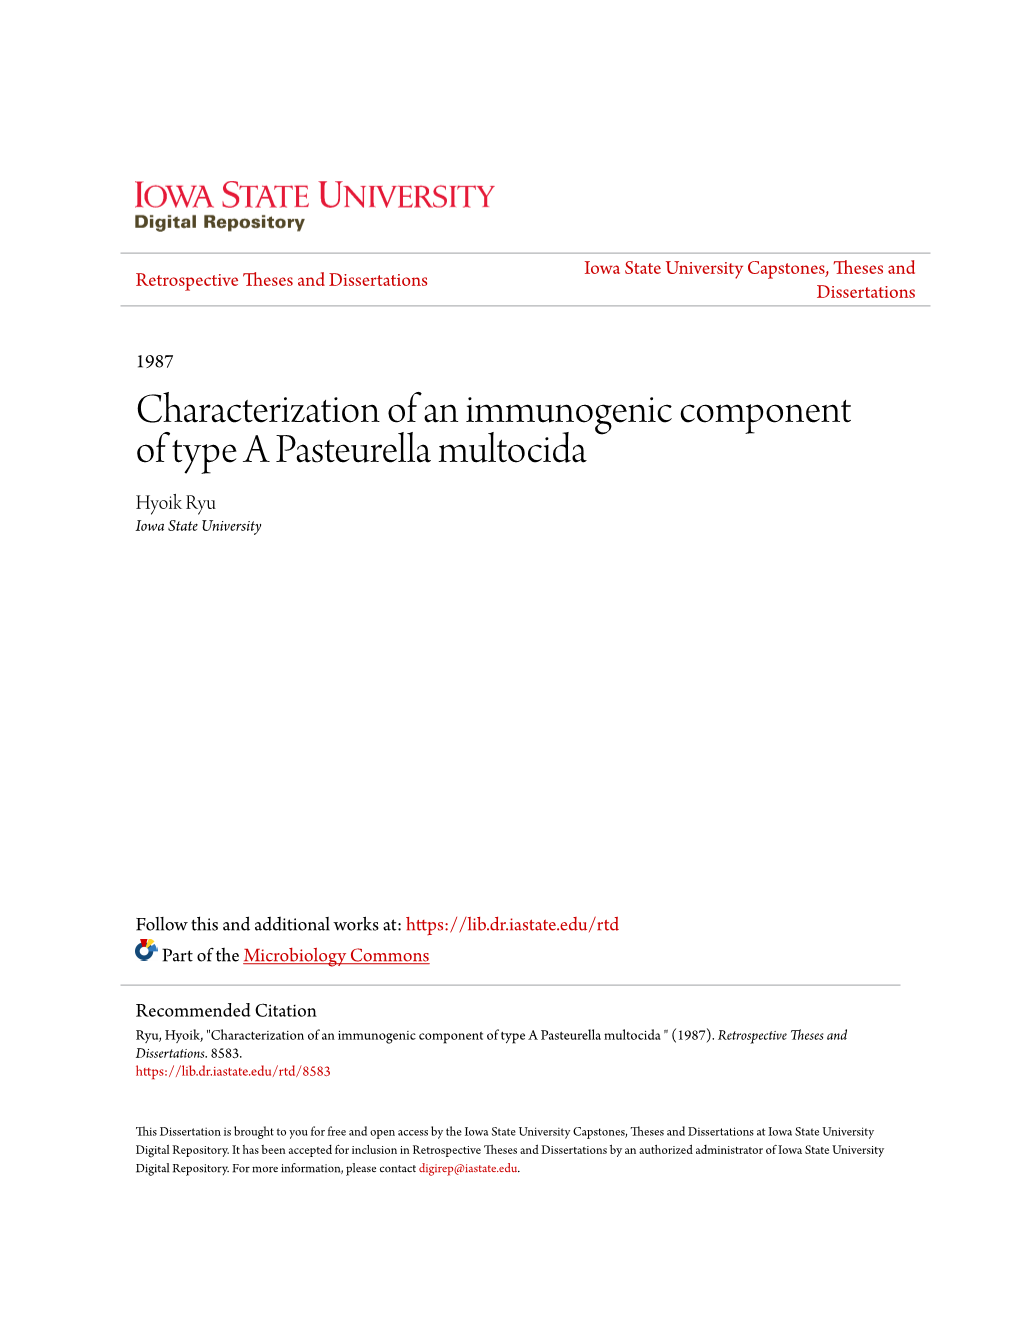 Characterization of an Immunogenic Component of Type a Pasteurella Multocida Hyoik Ryu Iowa State University